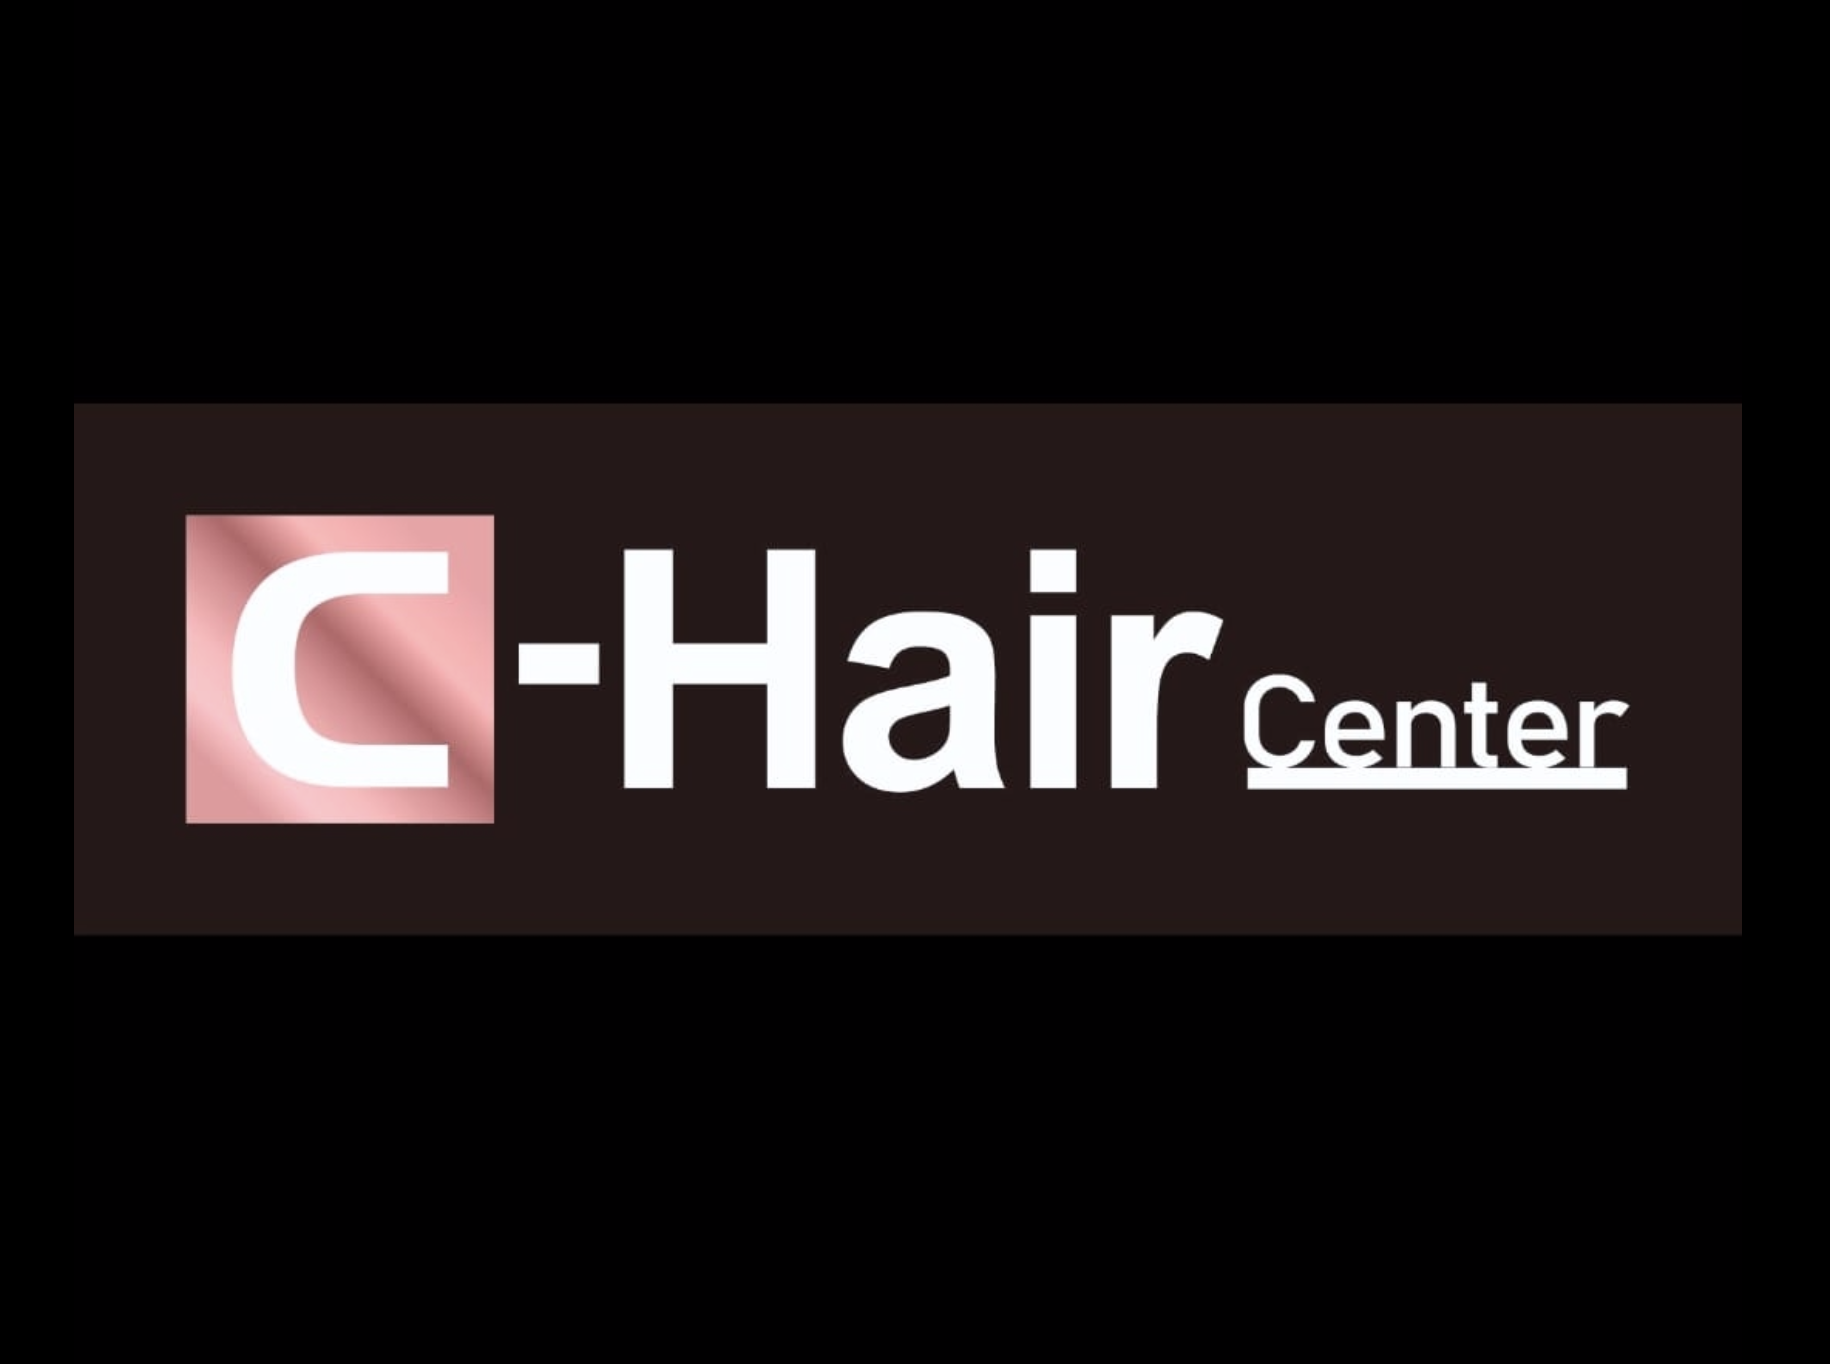 C Hair Centre (荃灣千色)